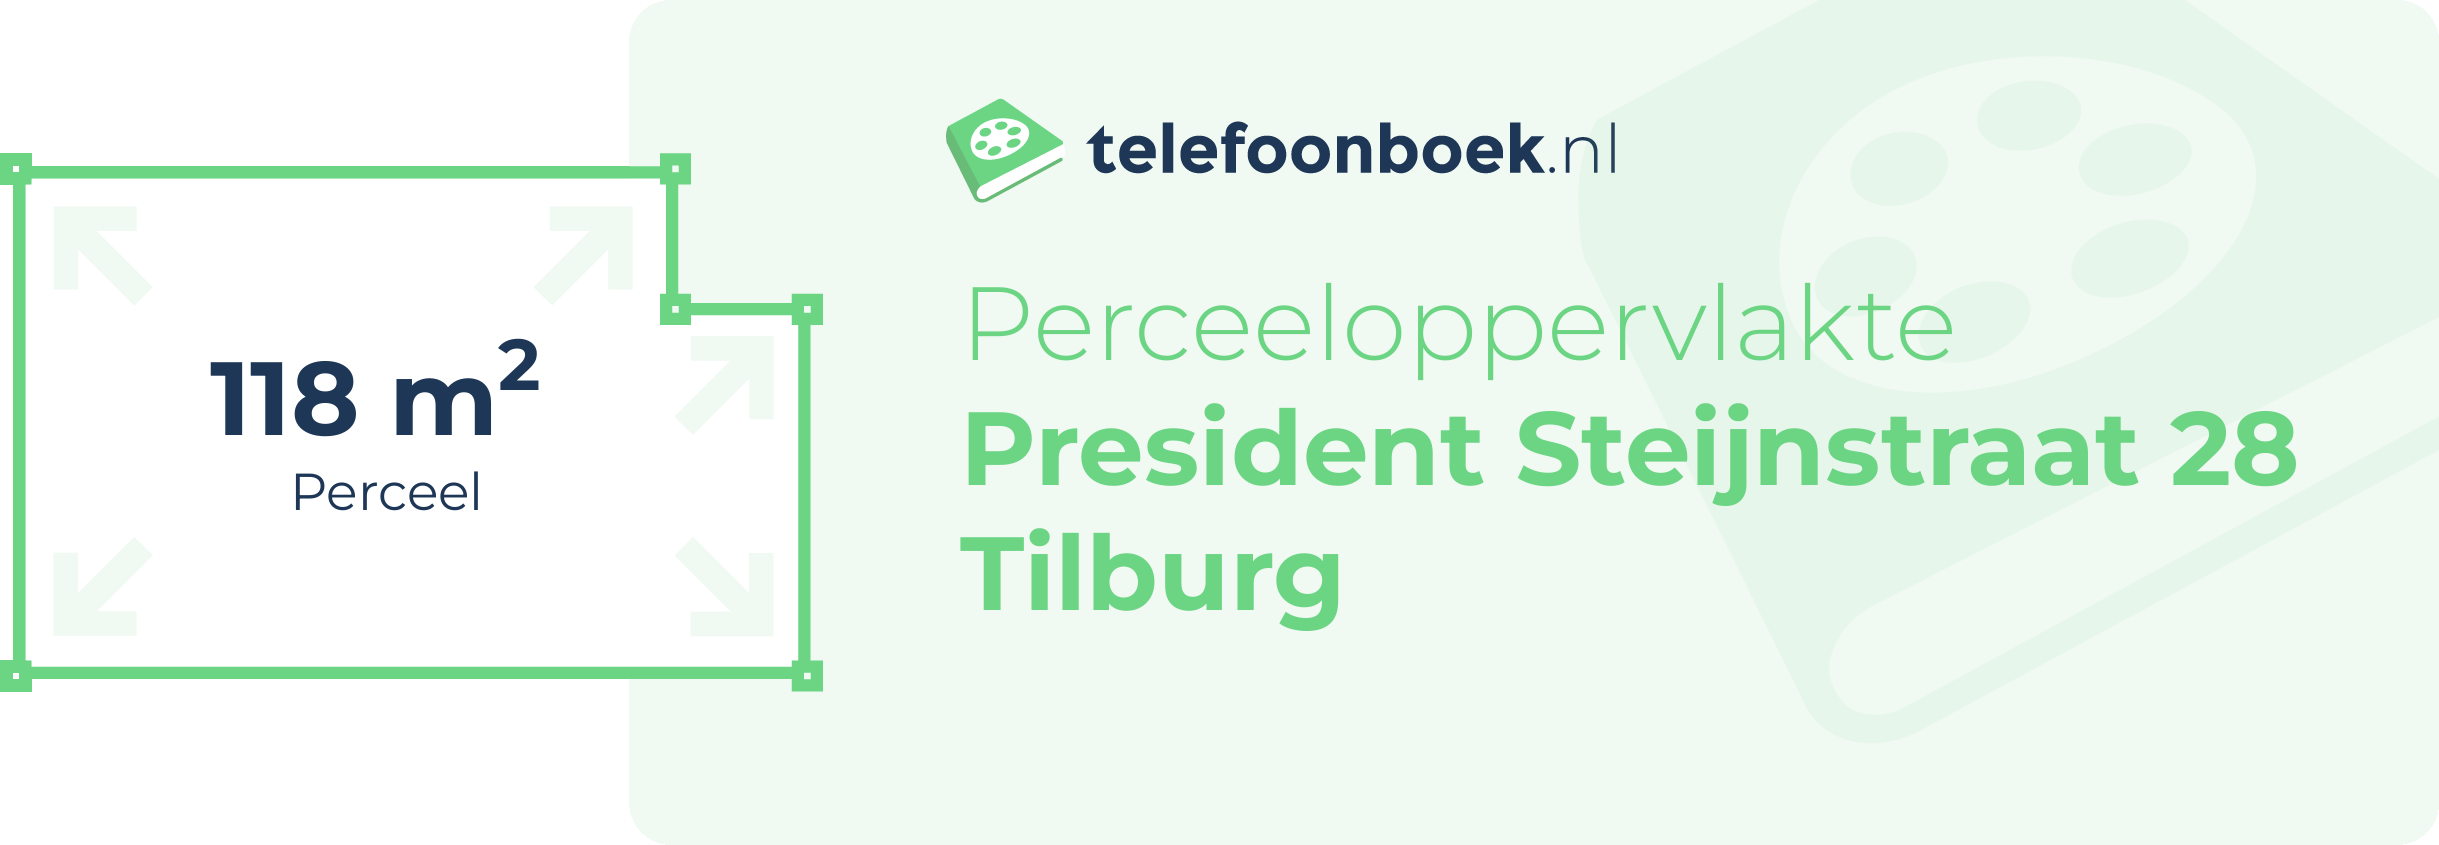 Perceeloppervlakte President Steijnstraat 28 Tilburg